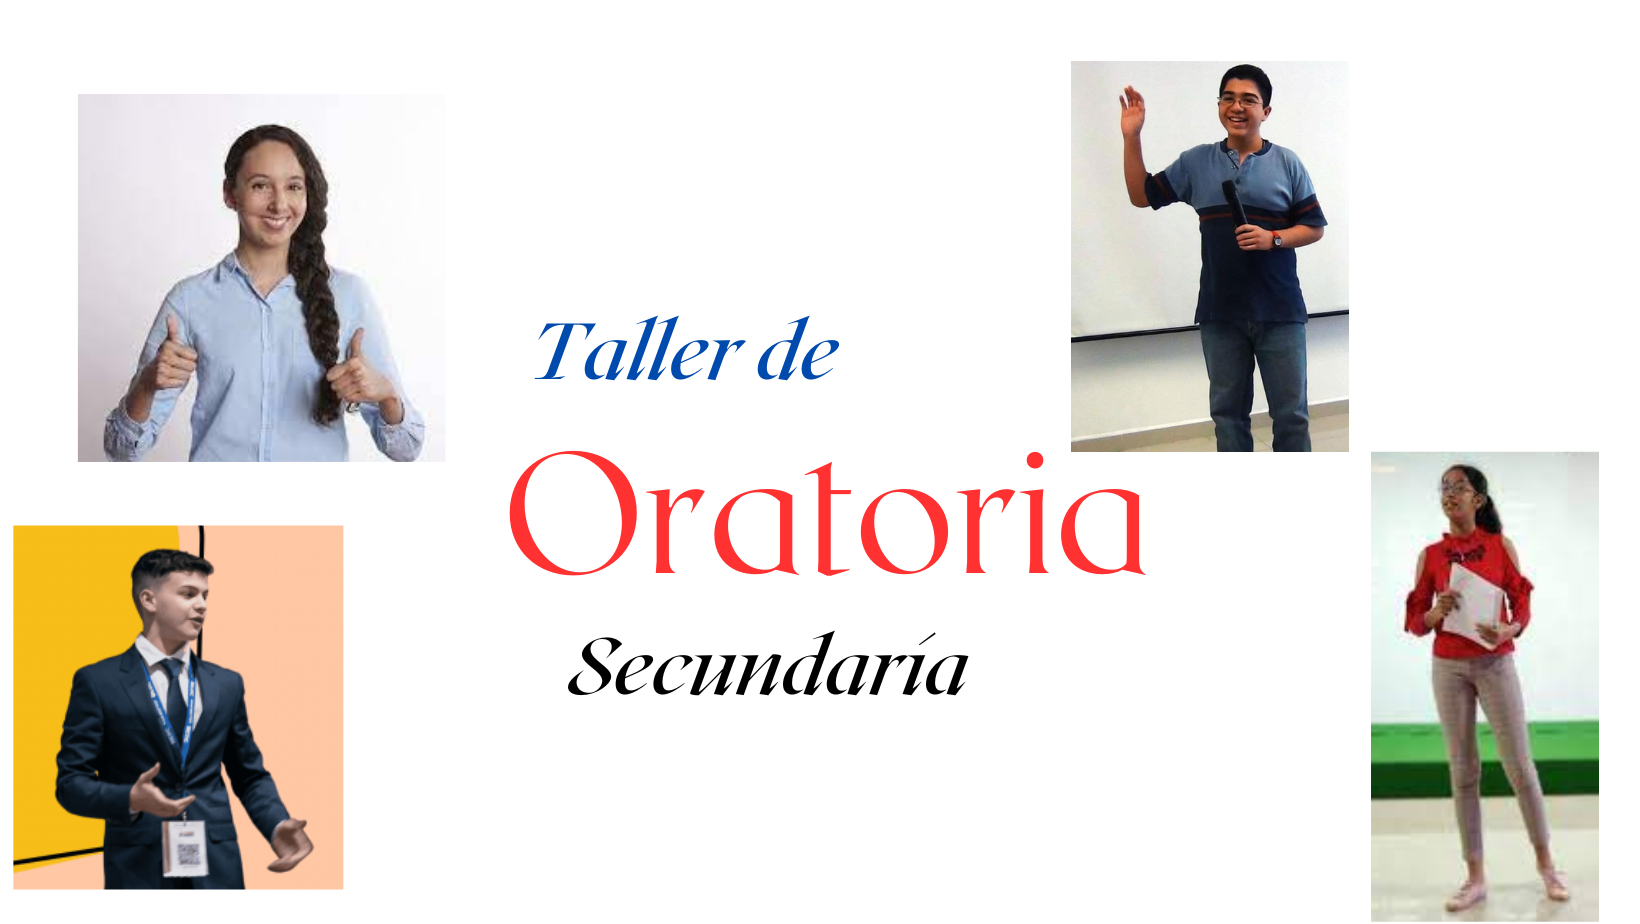 TALLER DE ORATORIA 2 A SECUNDARIA